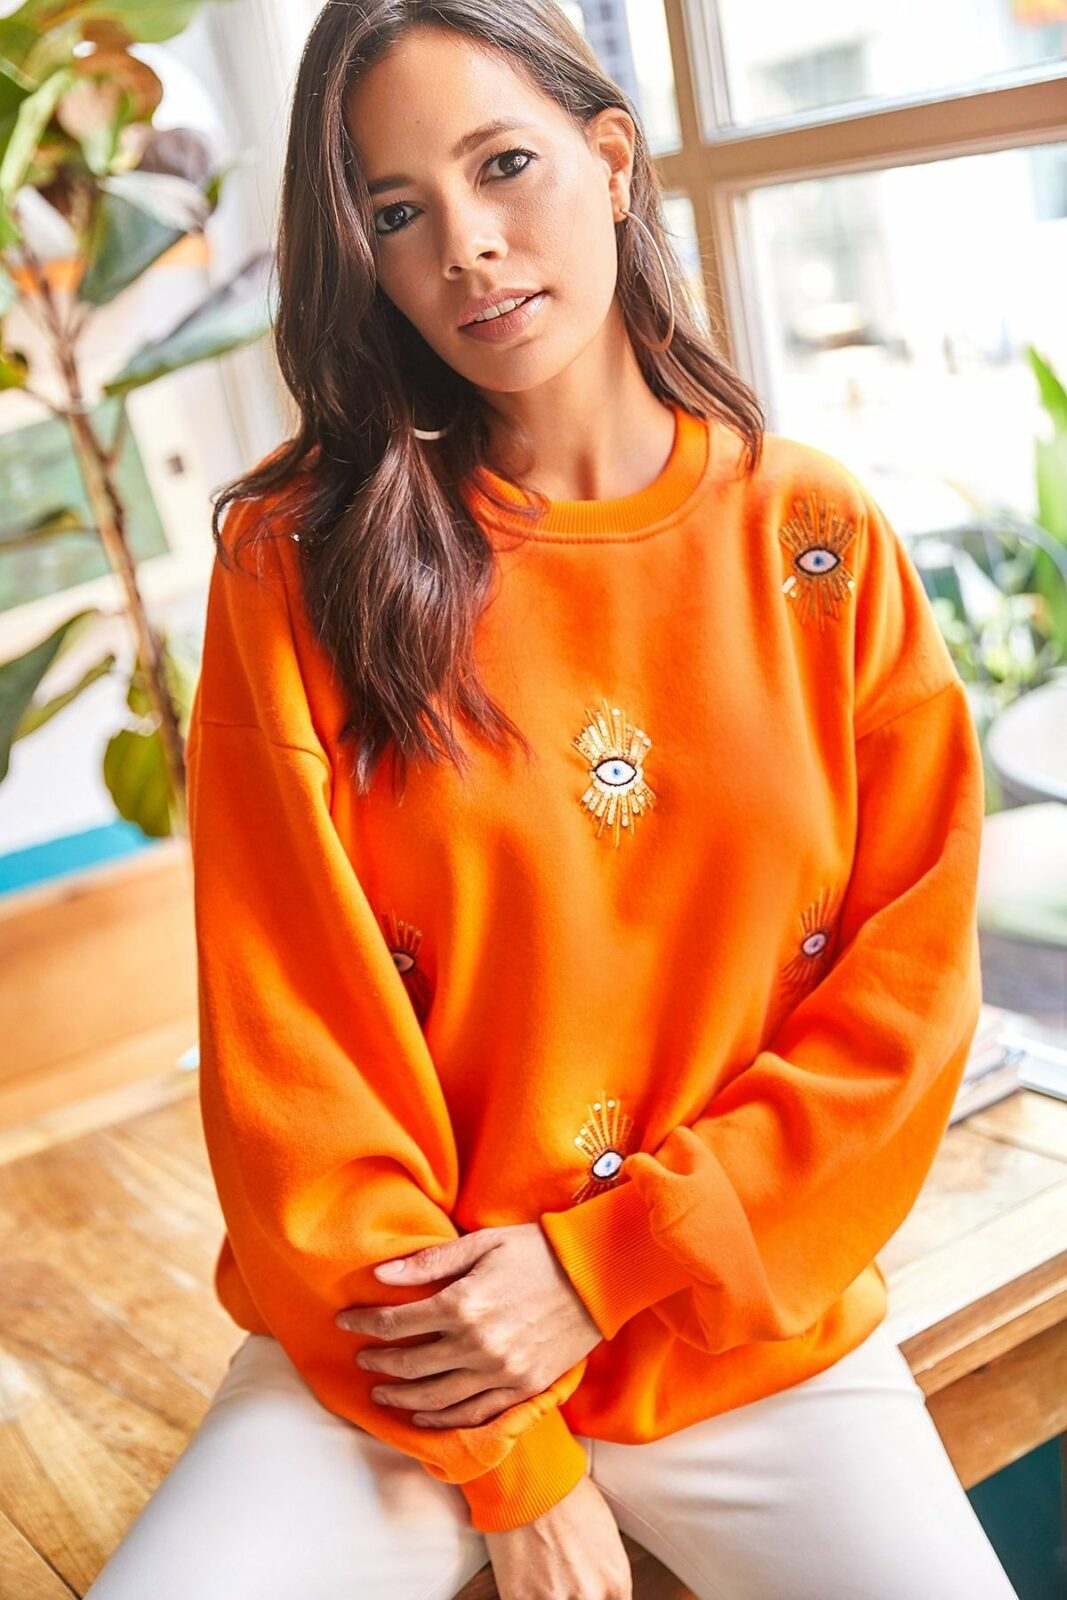 Olalook Sweatshirt - Orange